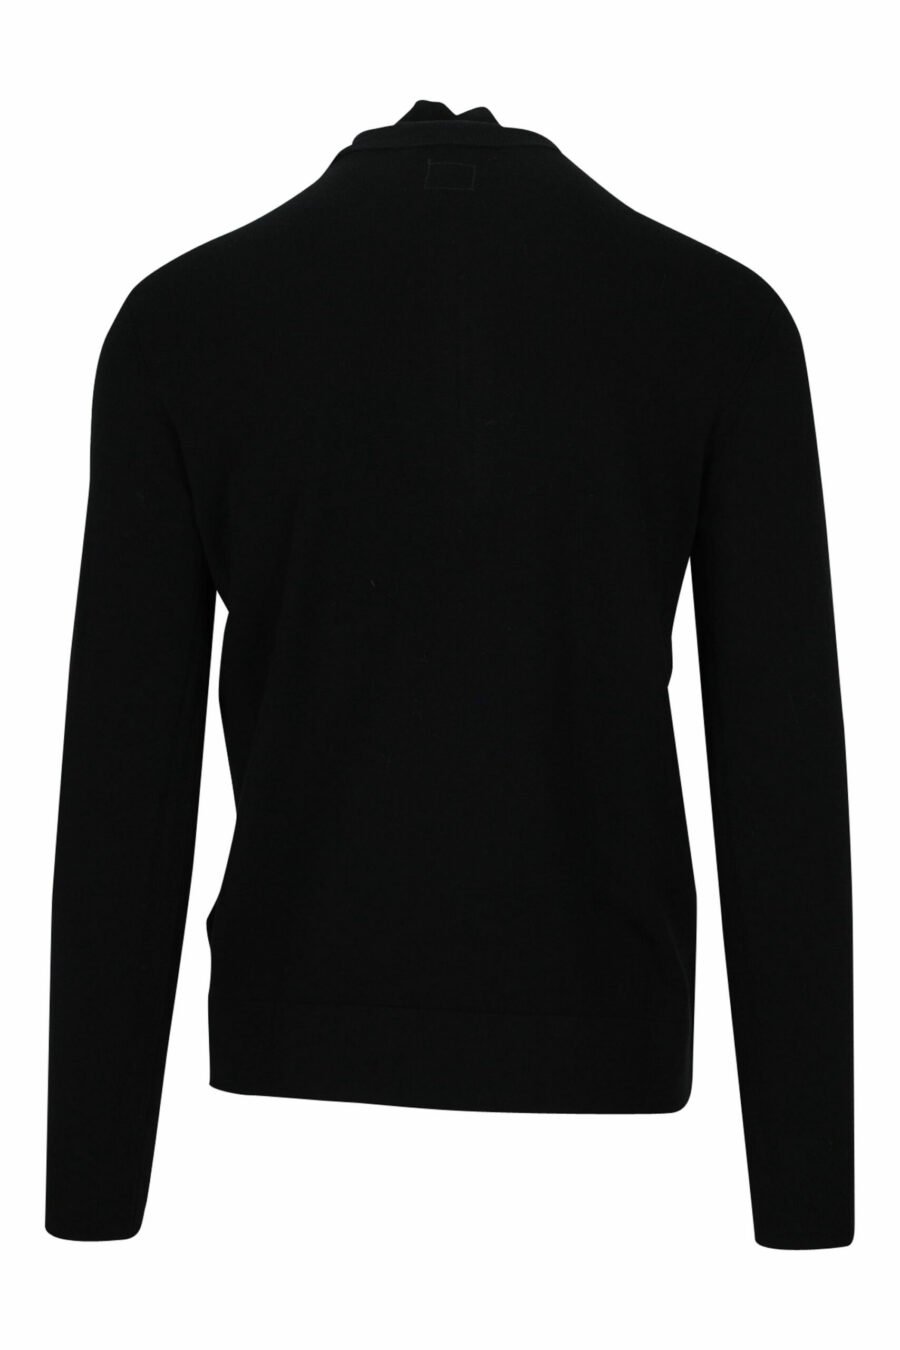 Jersey negro de cuello alto con cremallera y logo lente lateral - 7620943602975 1 scaled